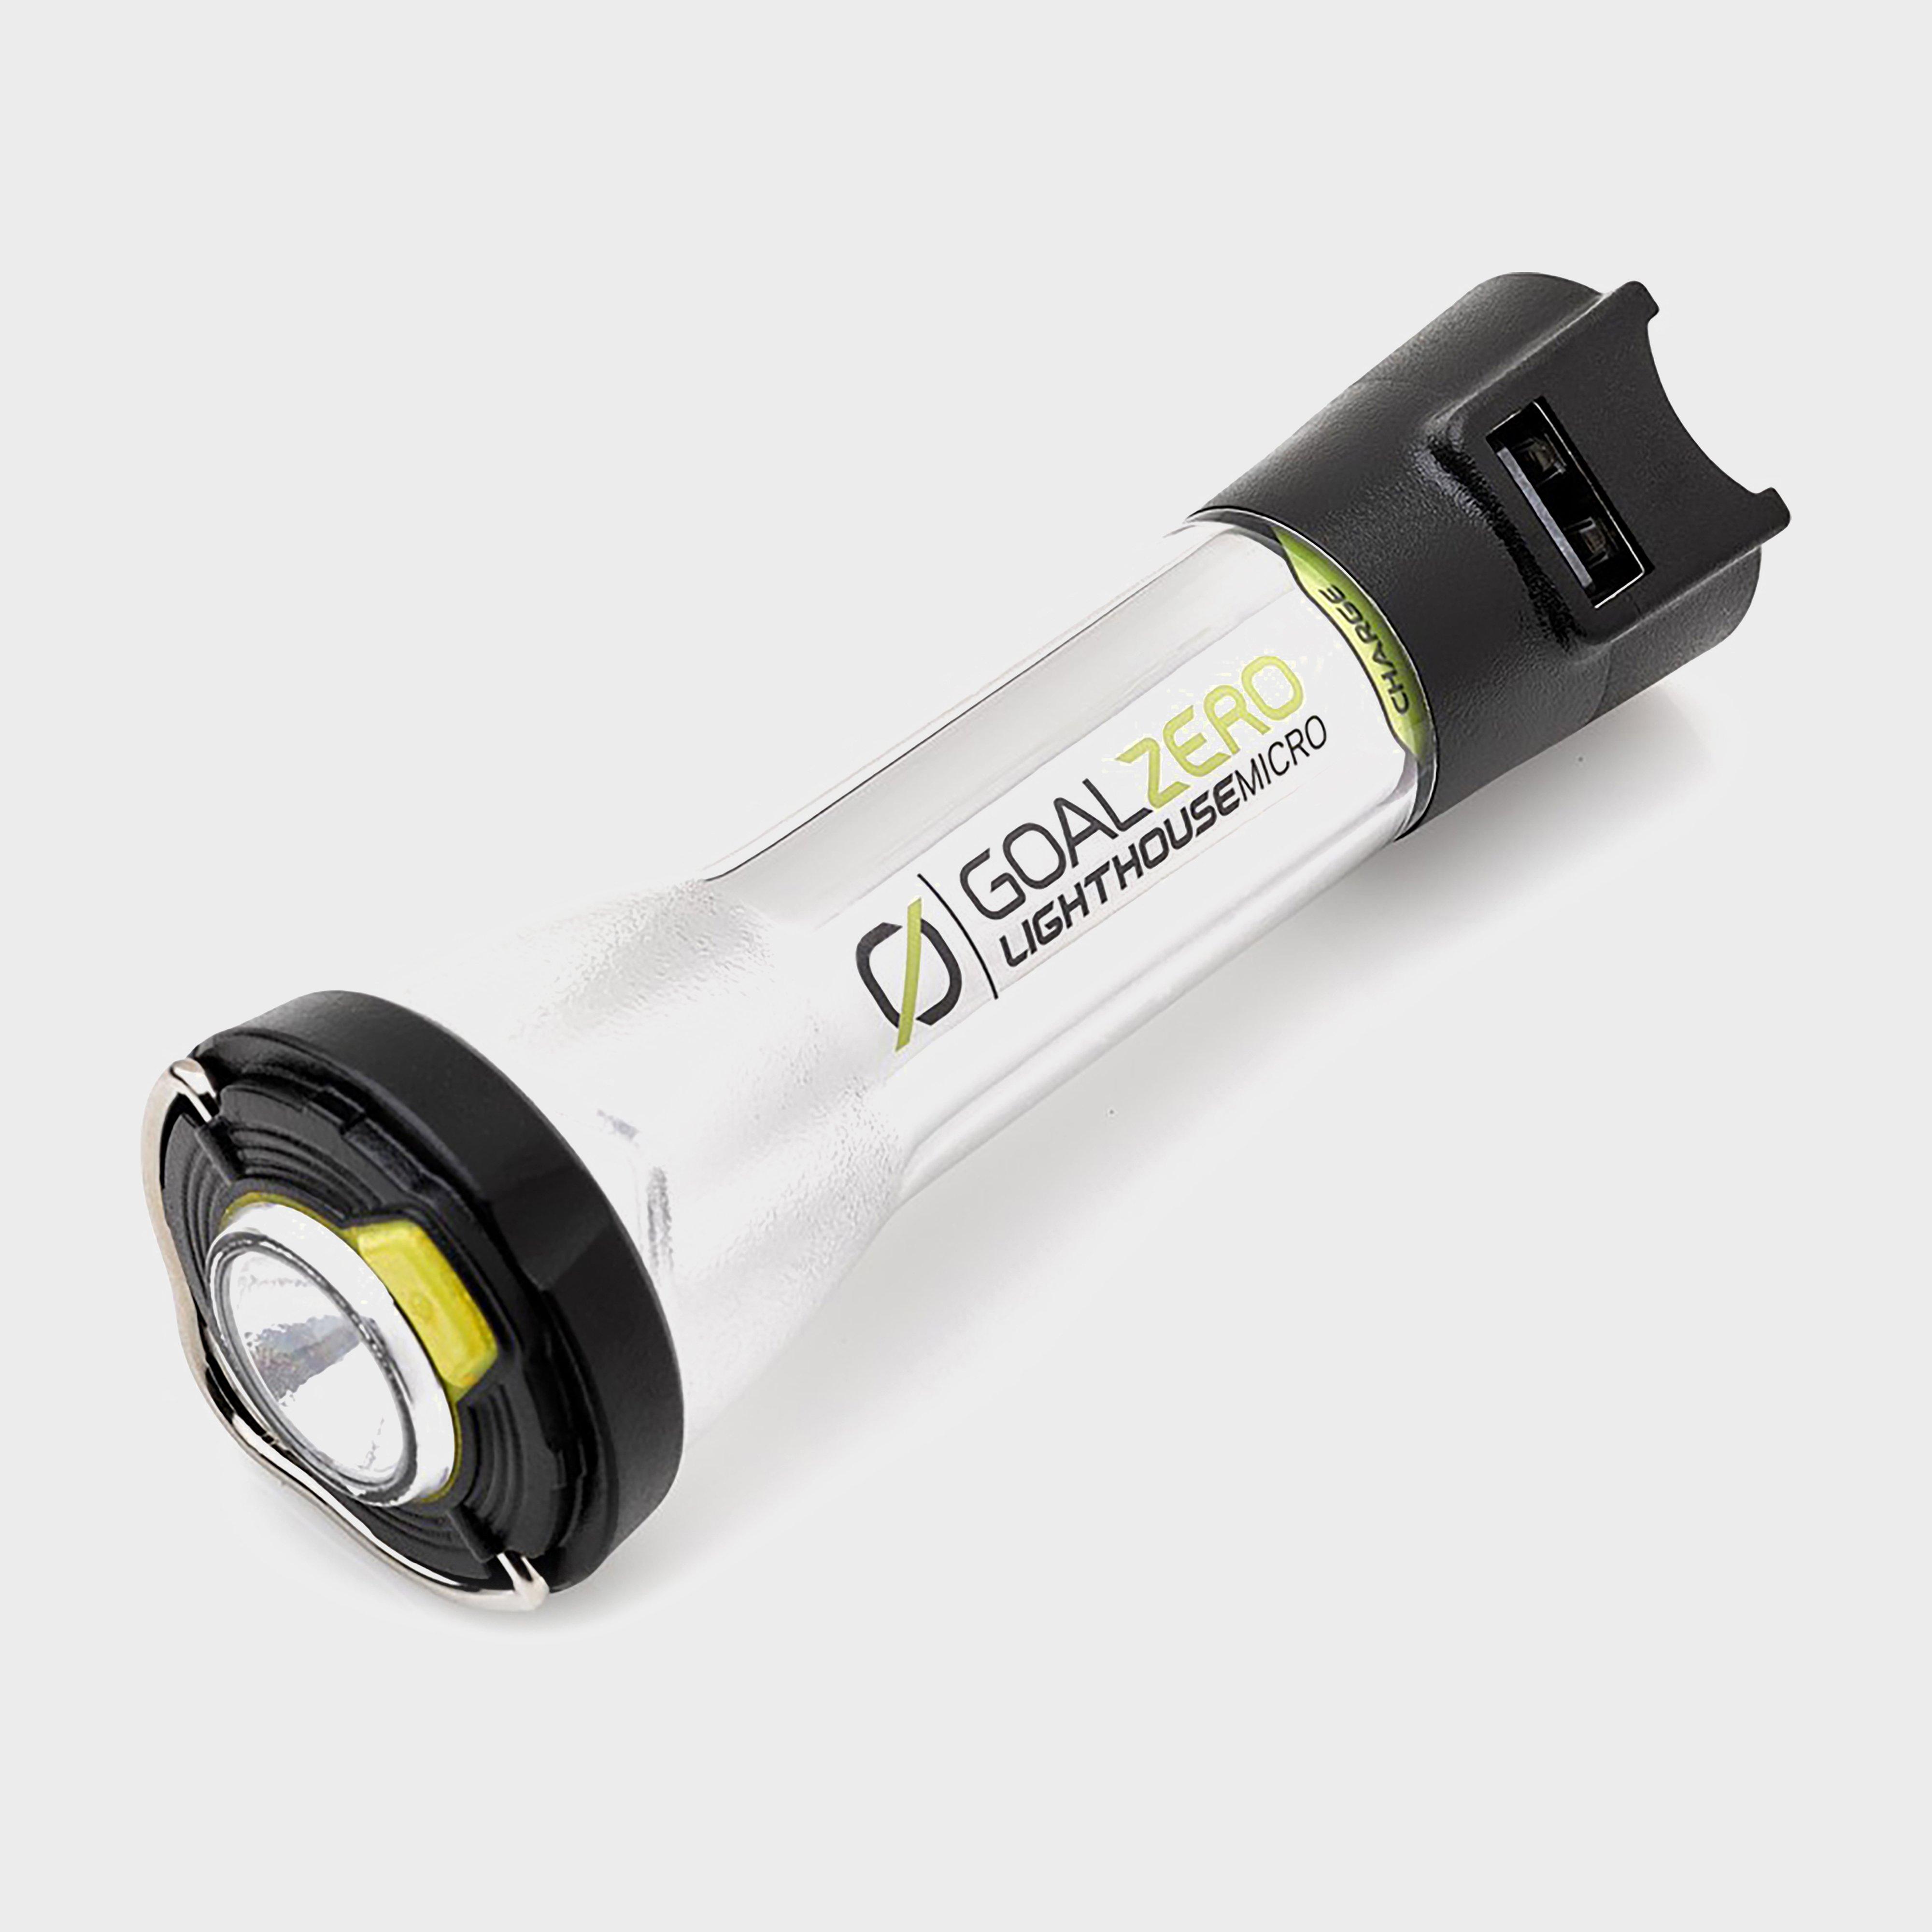 Goal Zero Goal Zero Lighthouse Micro Charge Usb Rechargeable Lantern - Black, BLACK